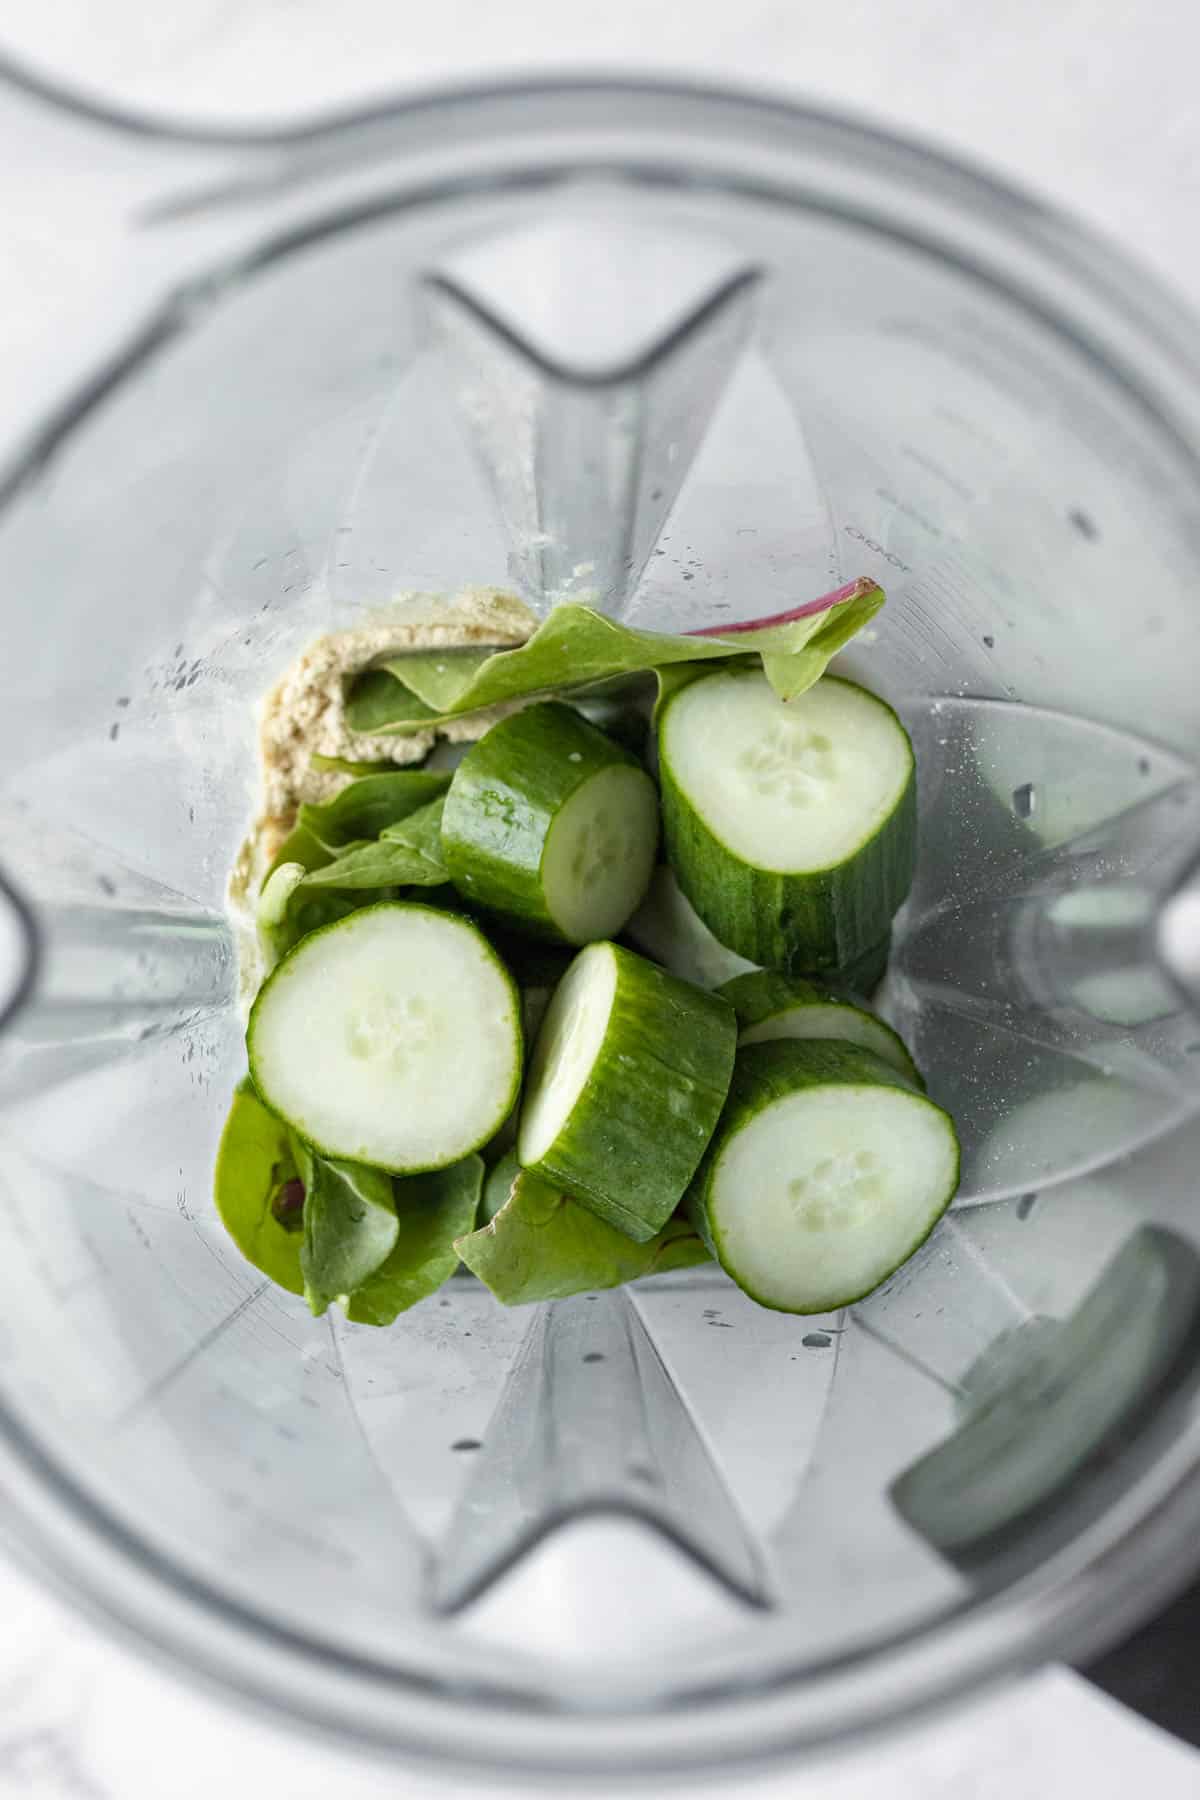 8 ingredients for cucumber smoothie inside a blender jar.